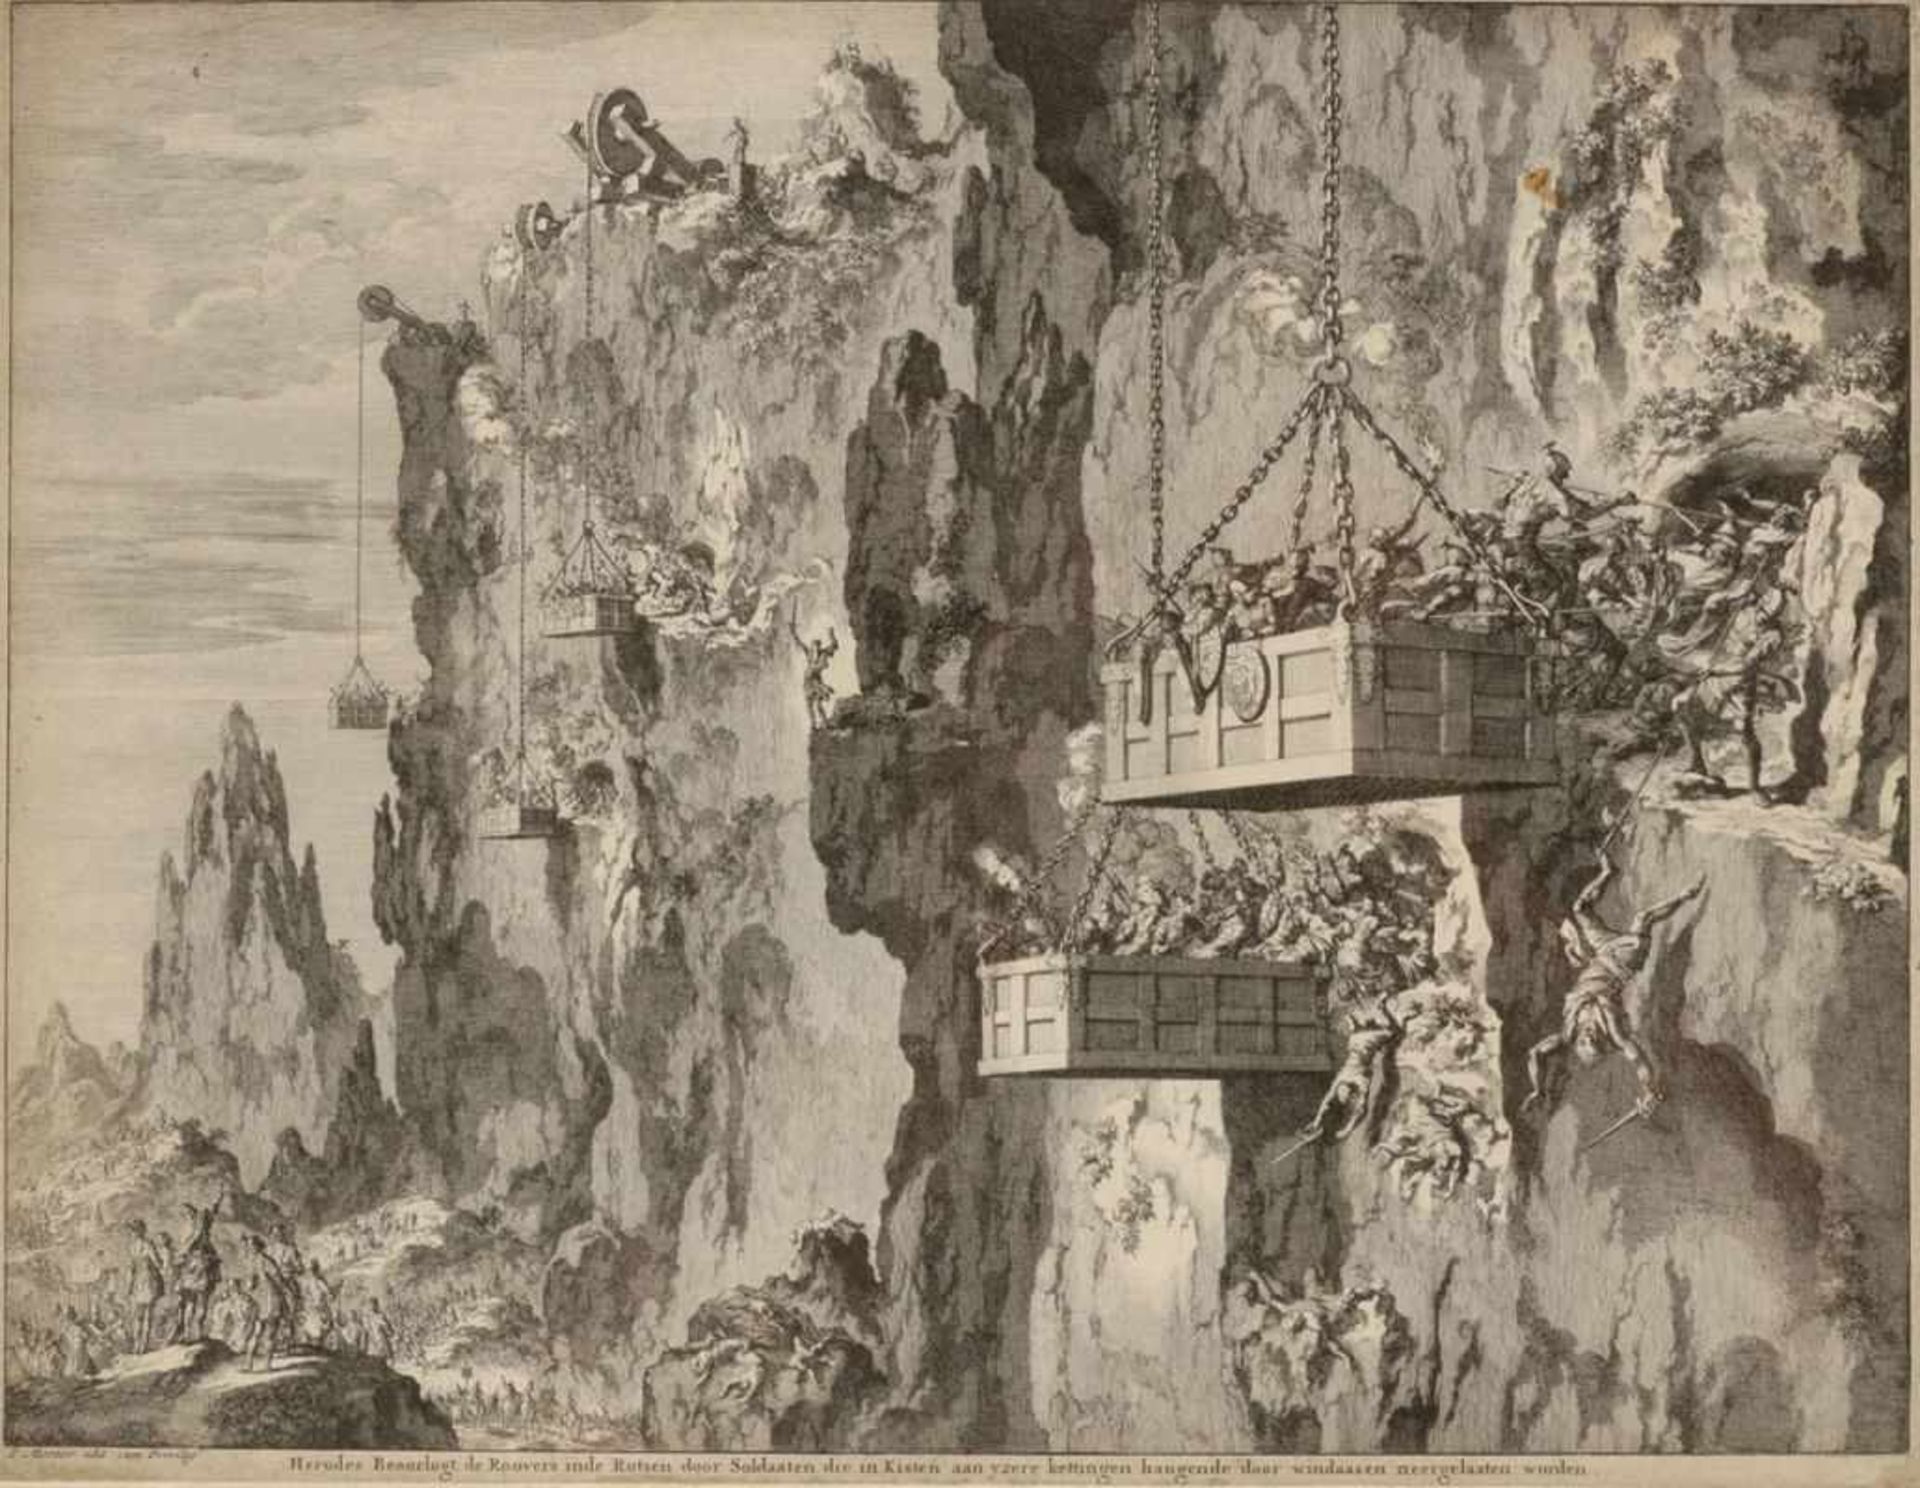 Jan LuykenAmsterdam 1649 - 1712 nach - "Herodes beoorlogt de roovers inde rotsen door soldaaten" -